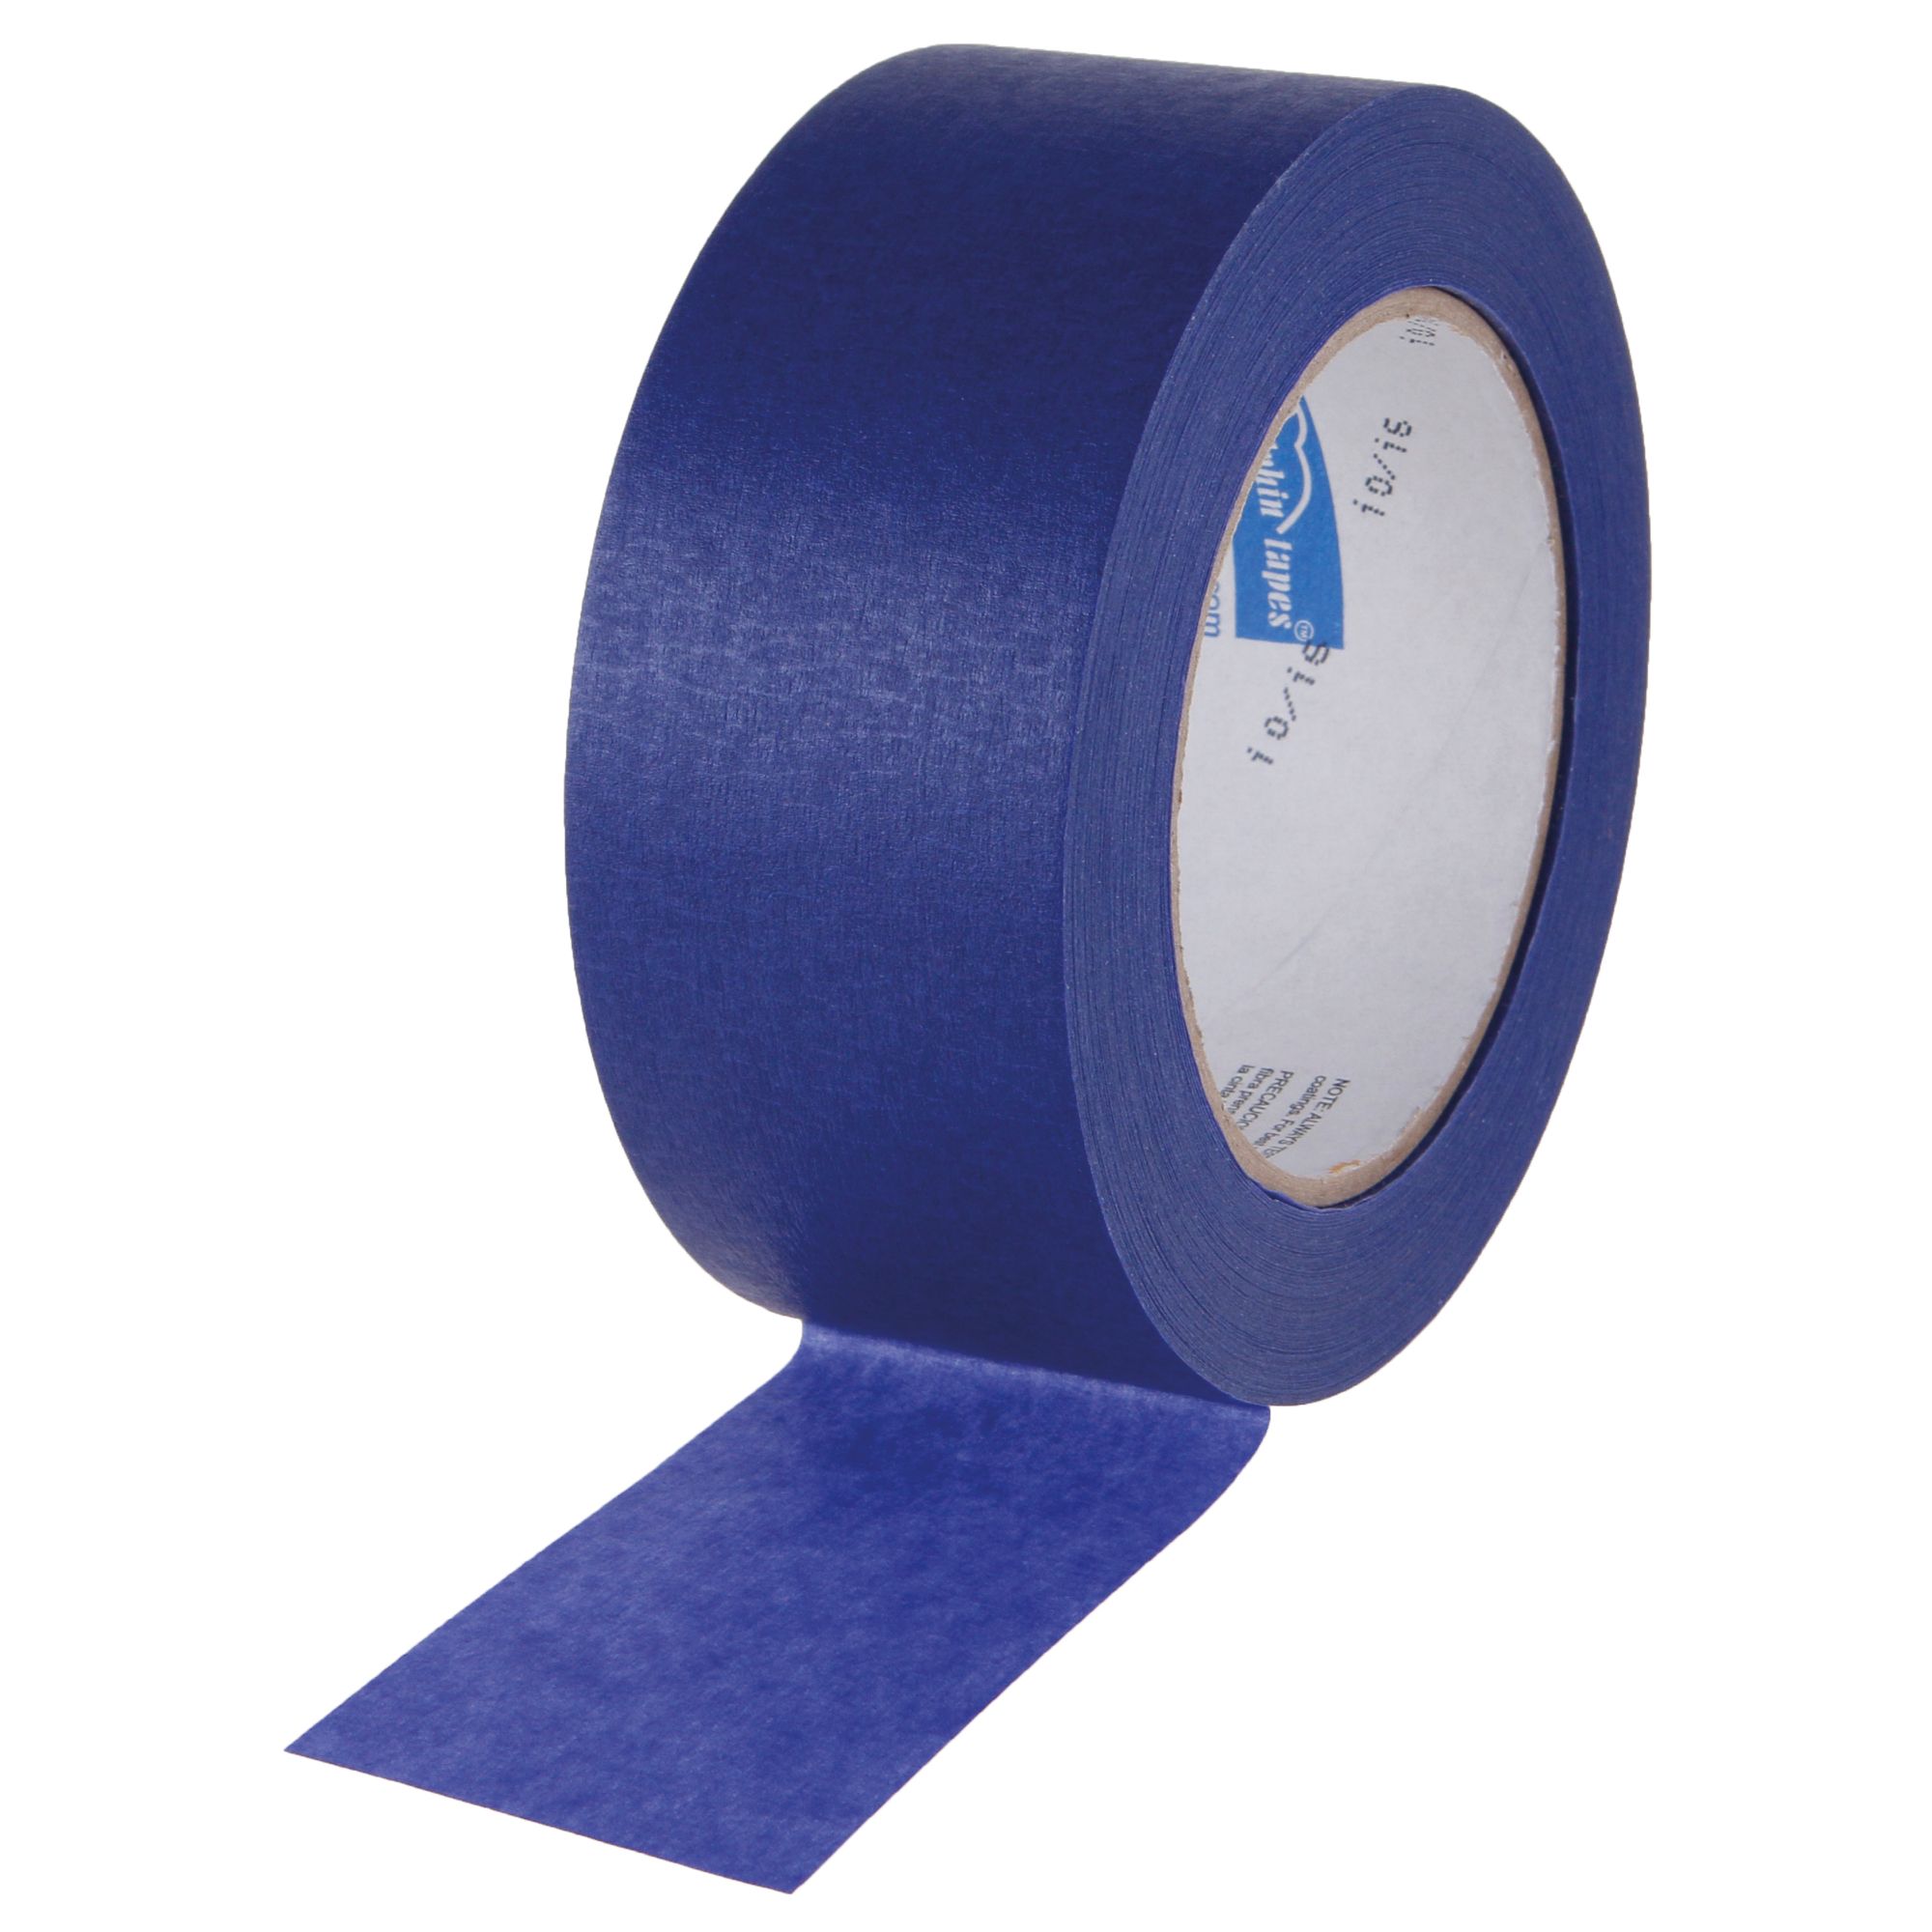 Páska papírová PROFI, 48mm x 50m, UV-14dní, BLUE DOLPHIN BLUE DOLPHIN TAPES 37264 0.265 Kg ŽELEZÁŽŘSTVÍ Sklad4 KB- 37264